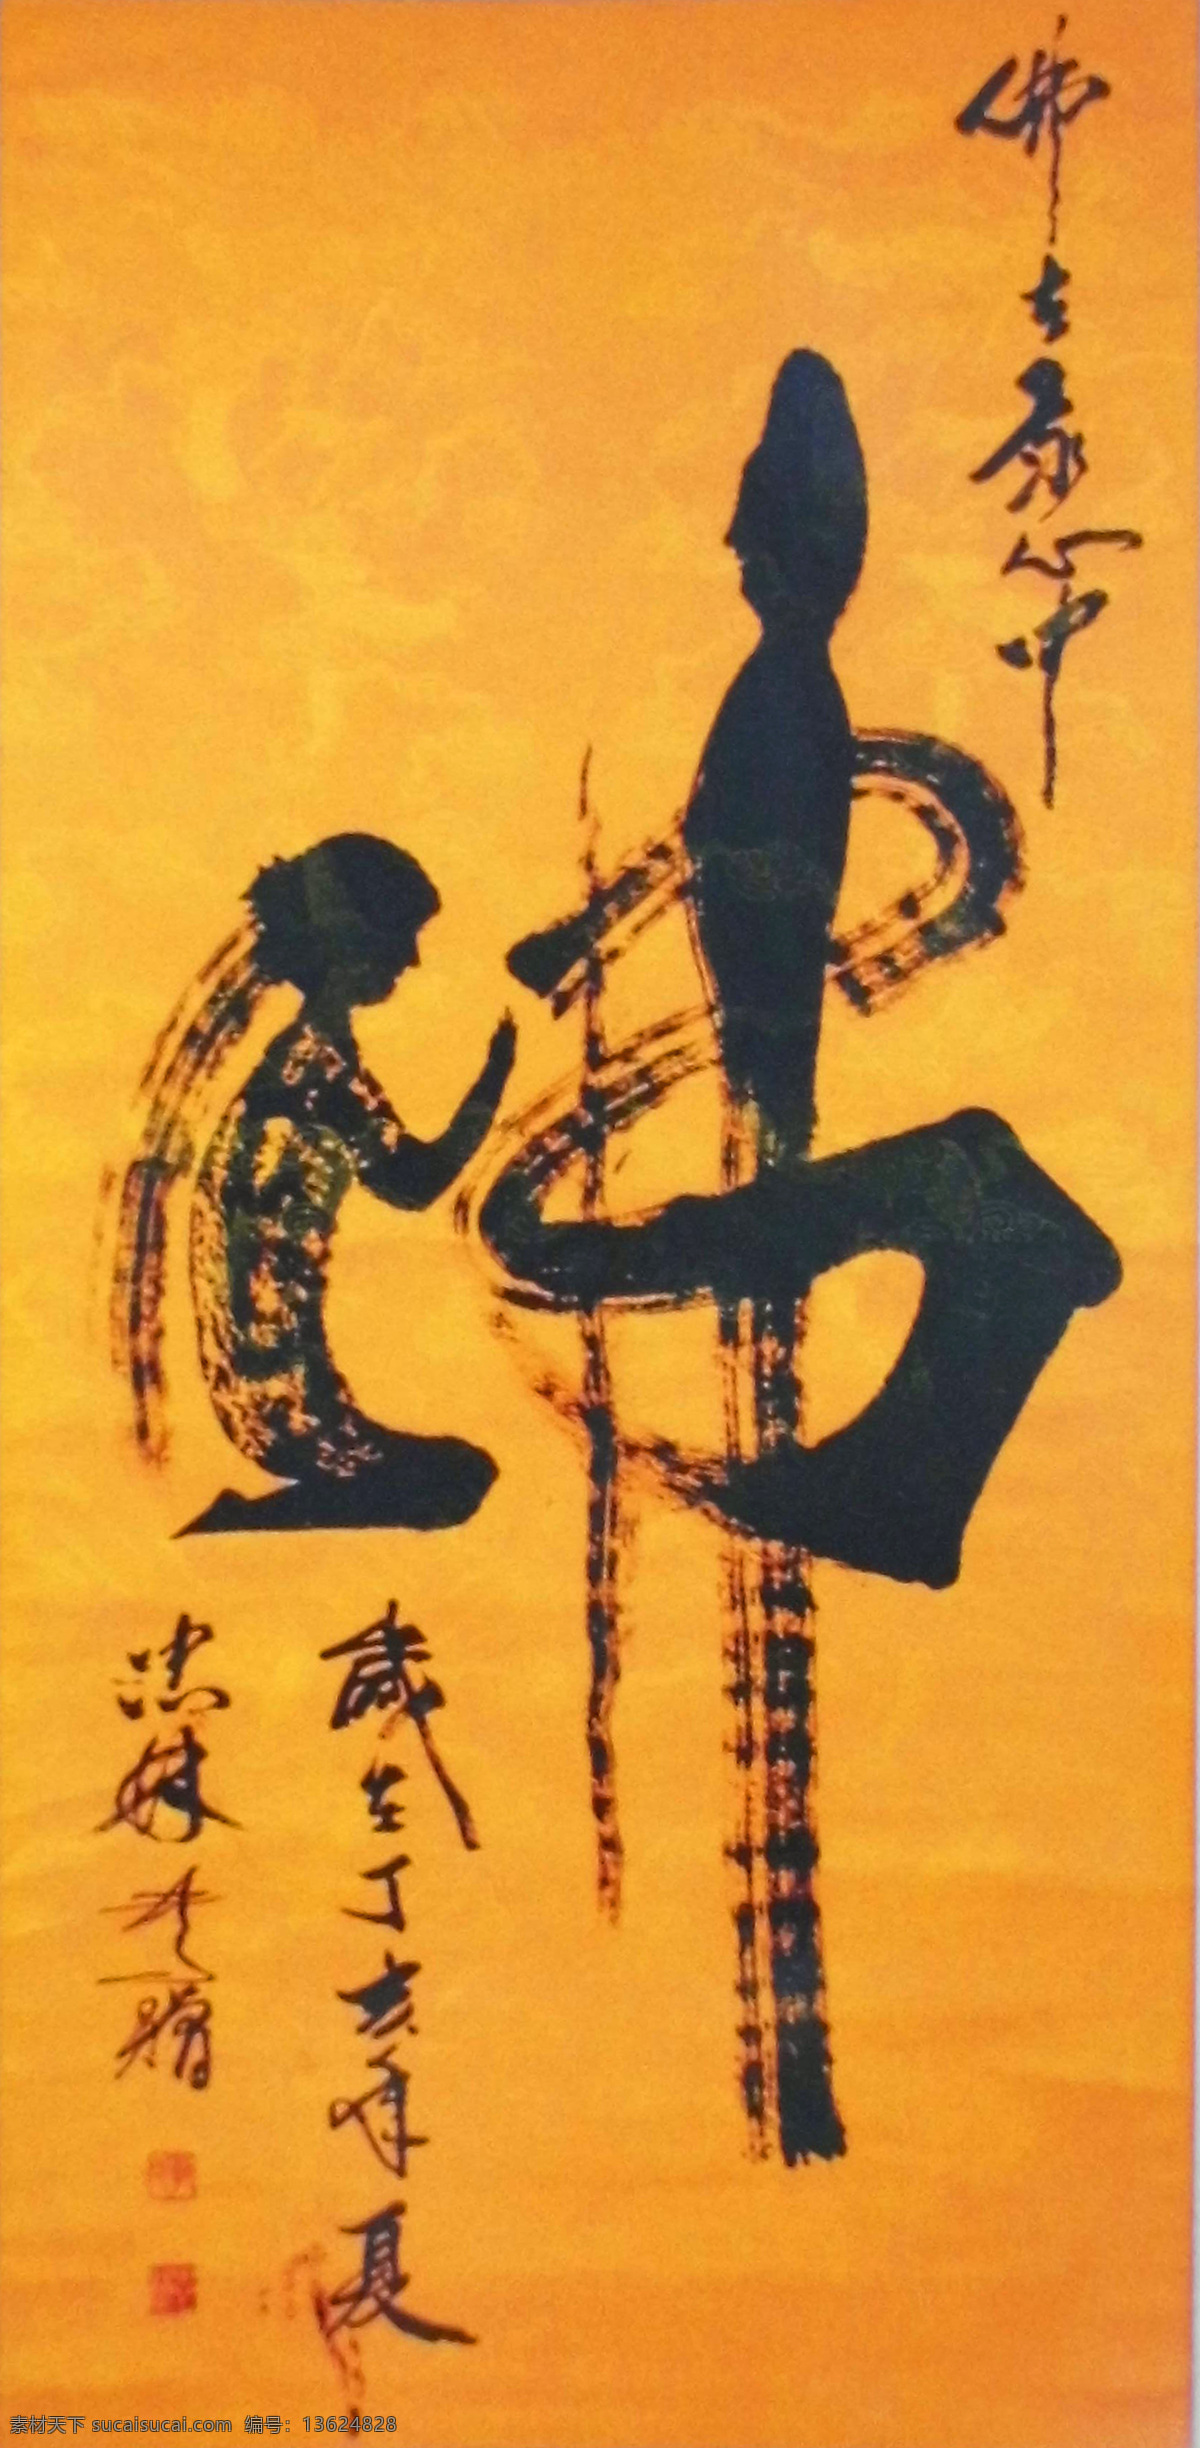 佛字书法 佛教书法 书法艺术 佛 佛字 书法 文化艺术 绘画书法 画册 美术绘画